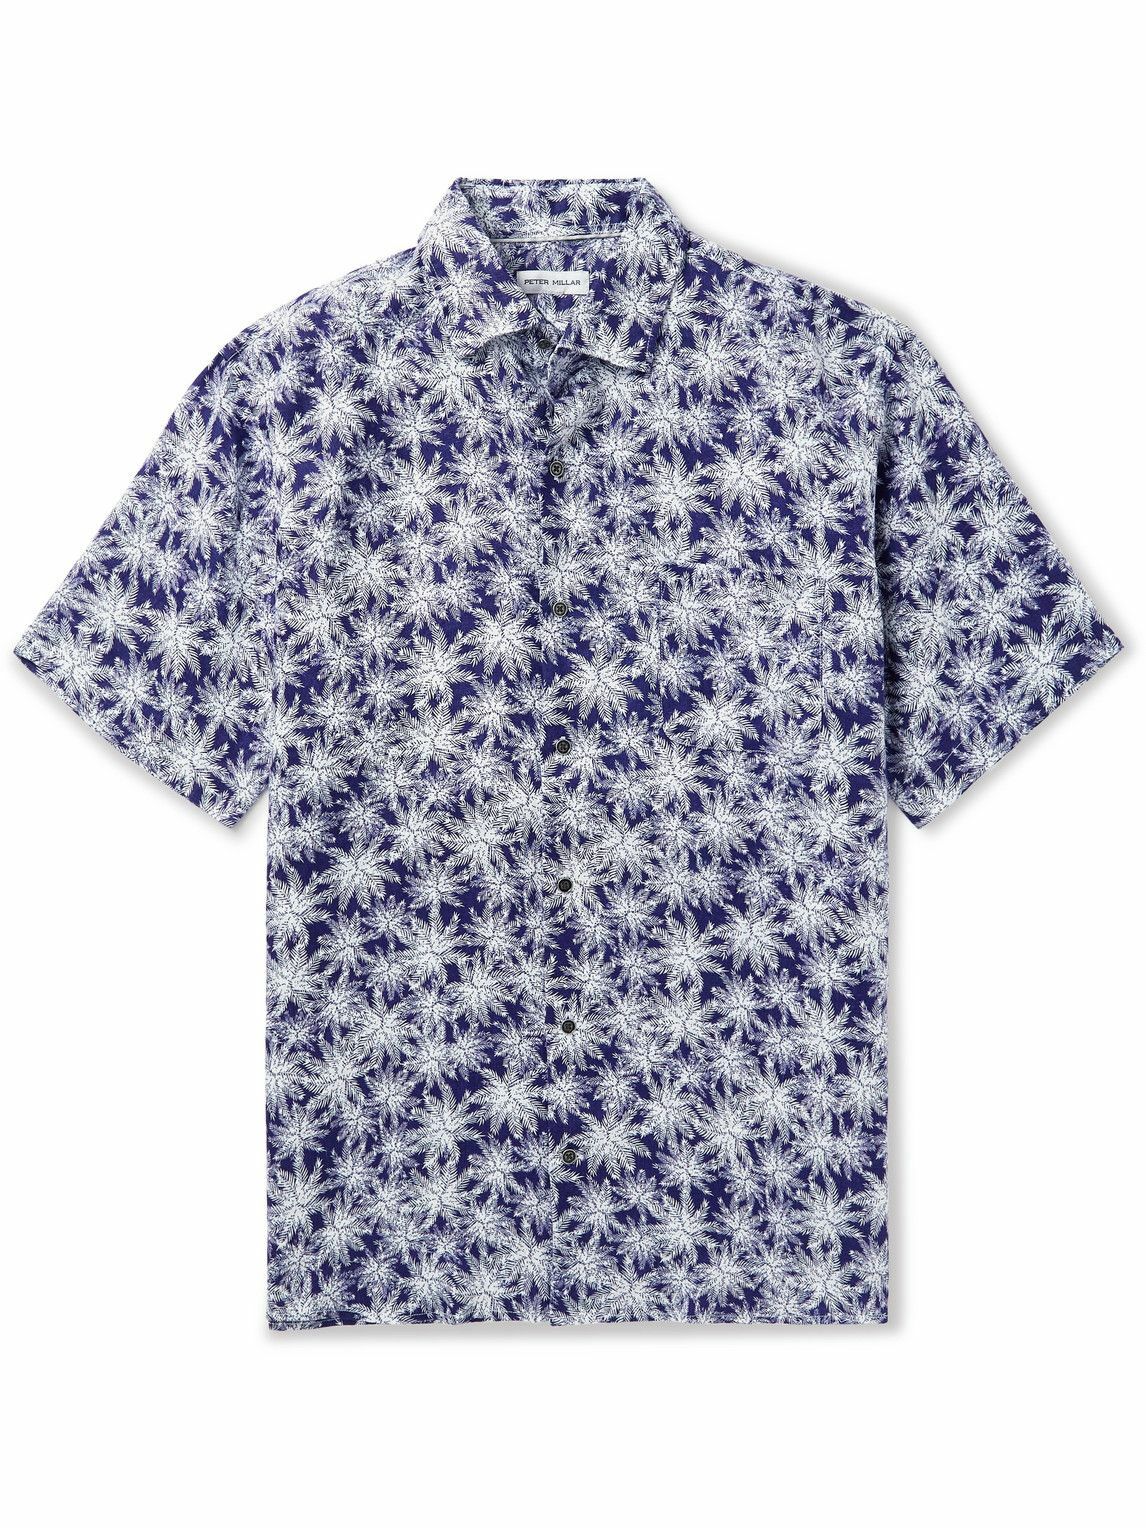 Peter Millar - Printed Linen Shirt - Blue Peter Millar